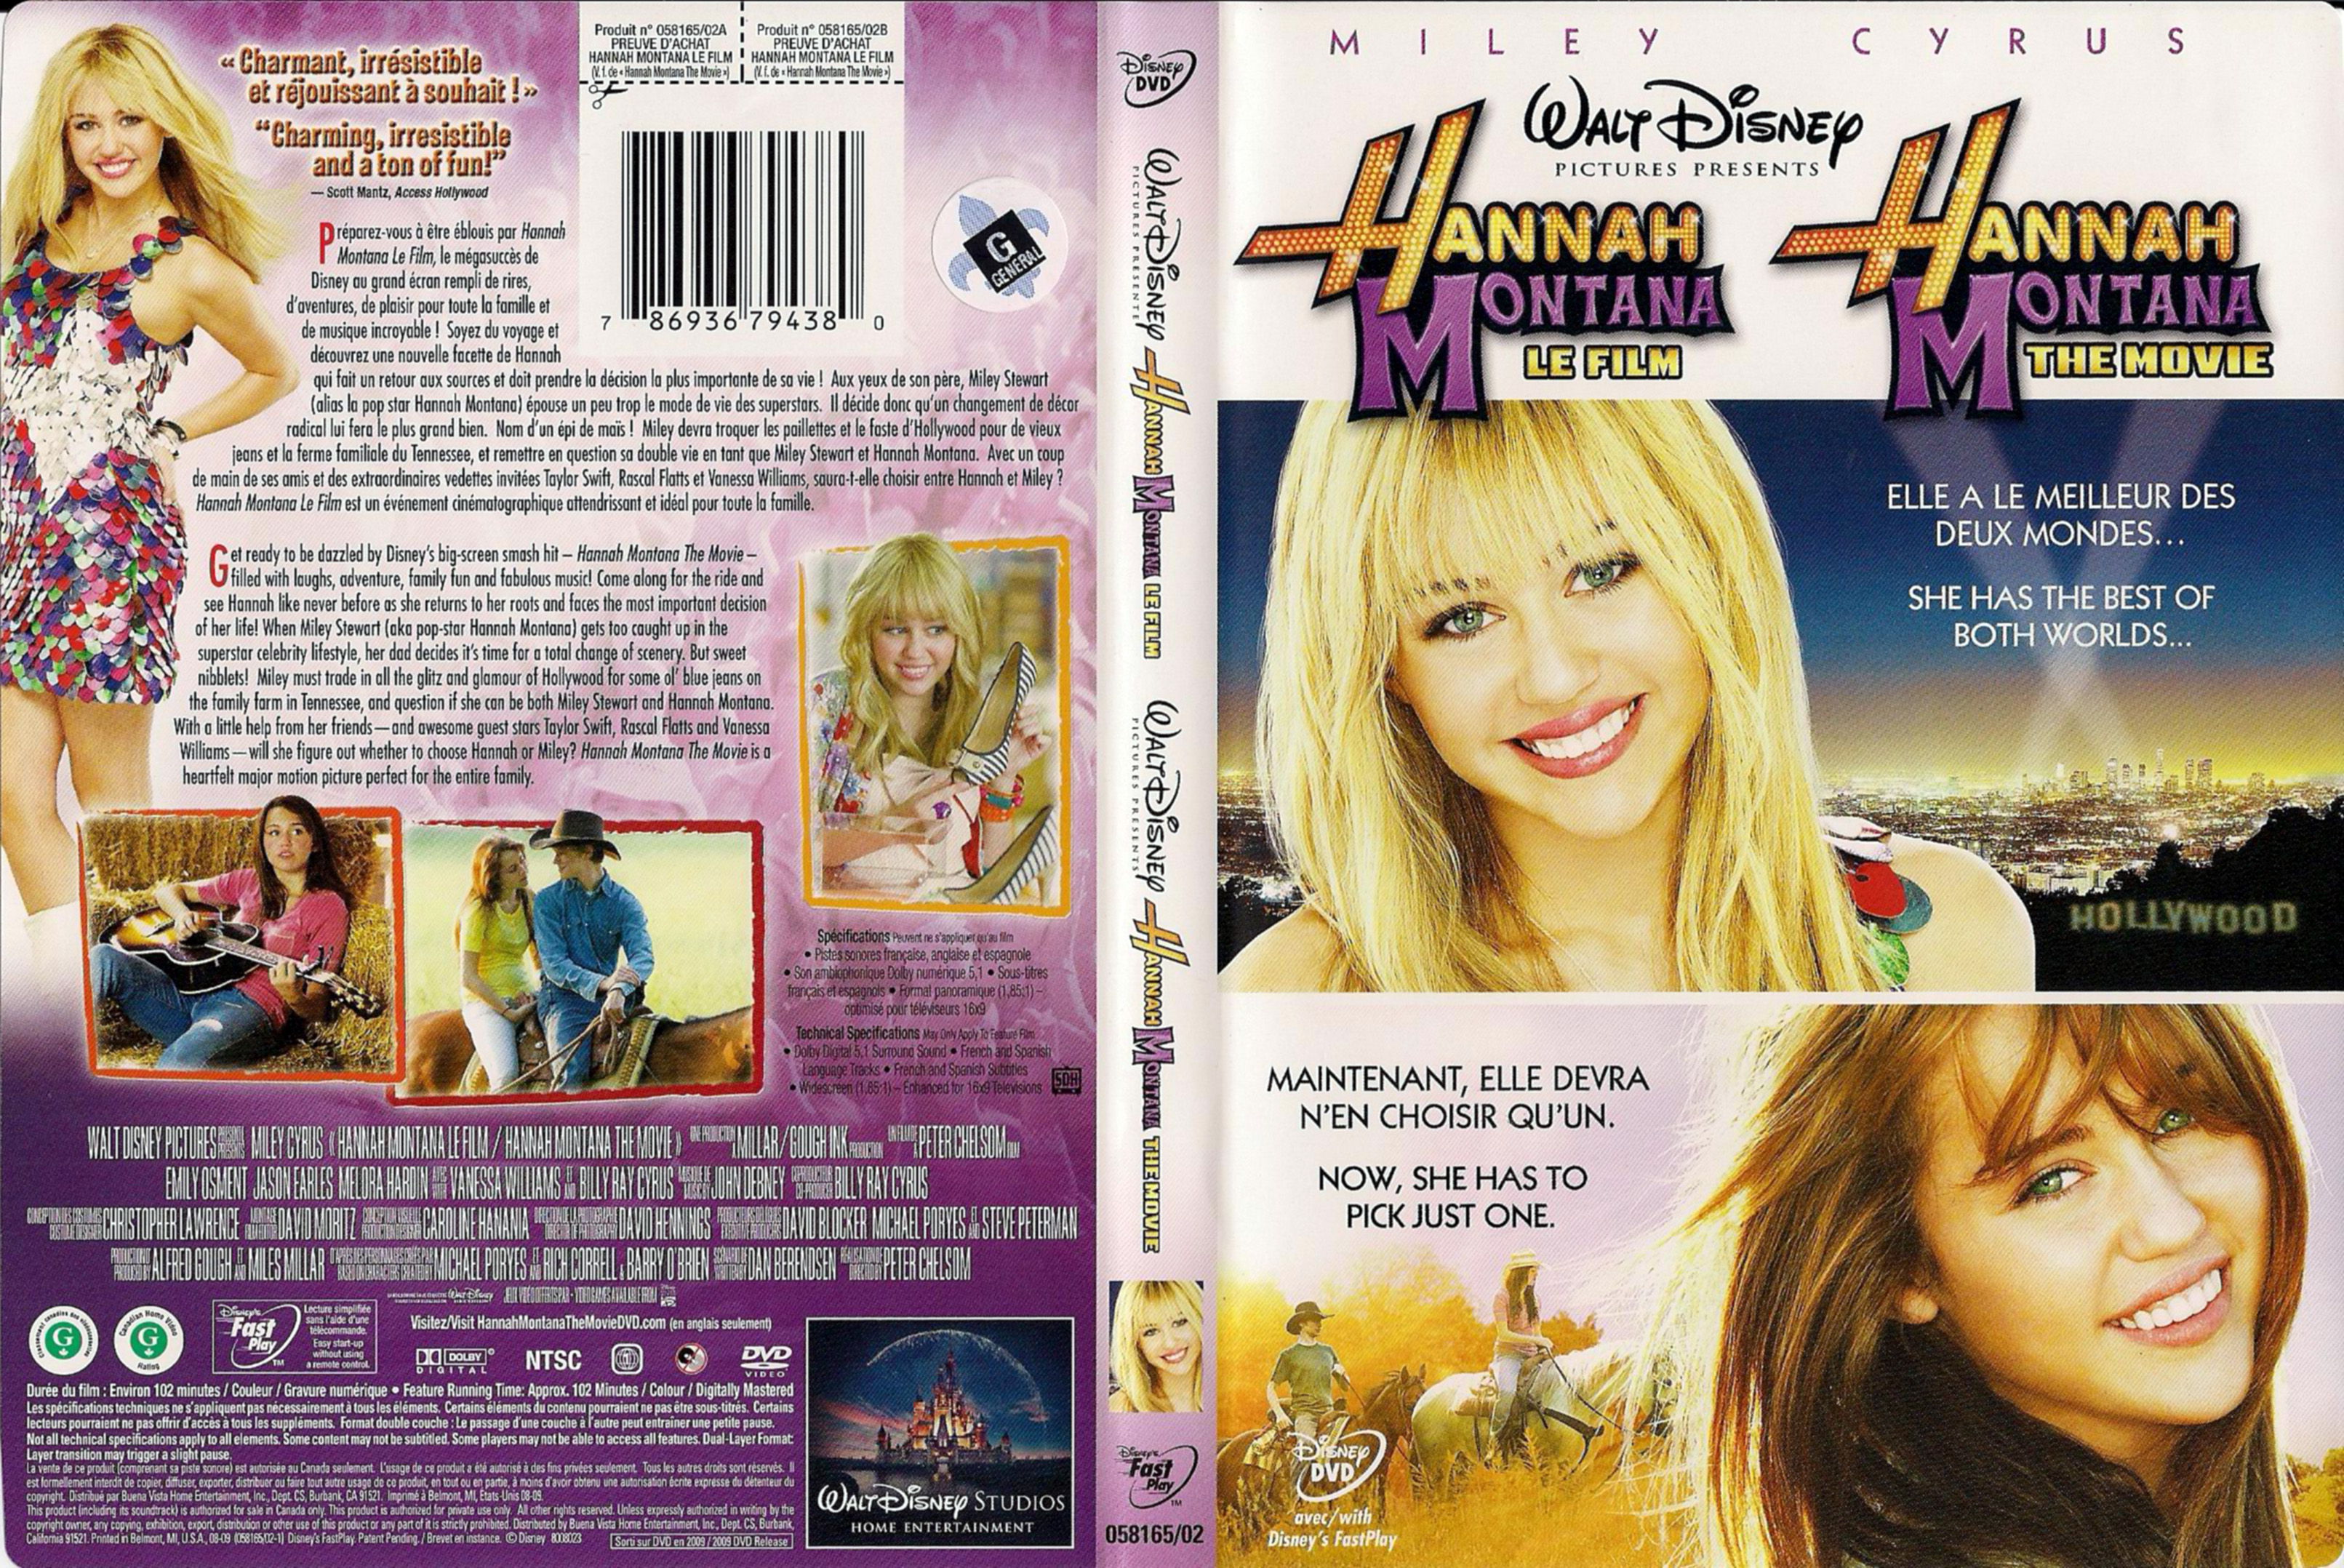 Jaquette DVD Hannah Montana Le film (Canadienne)